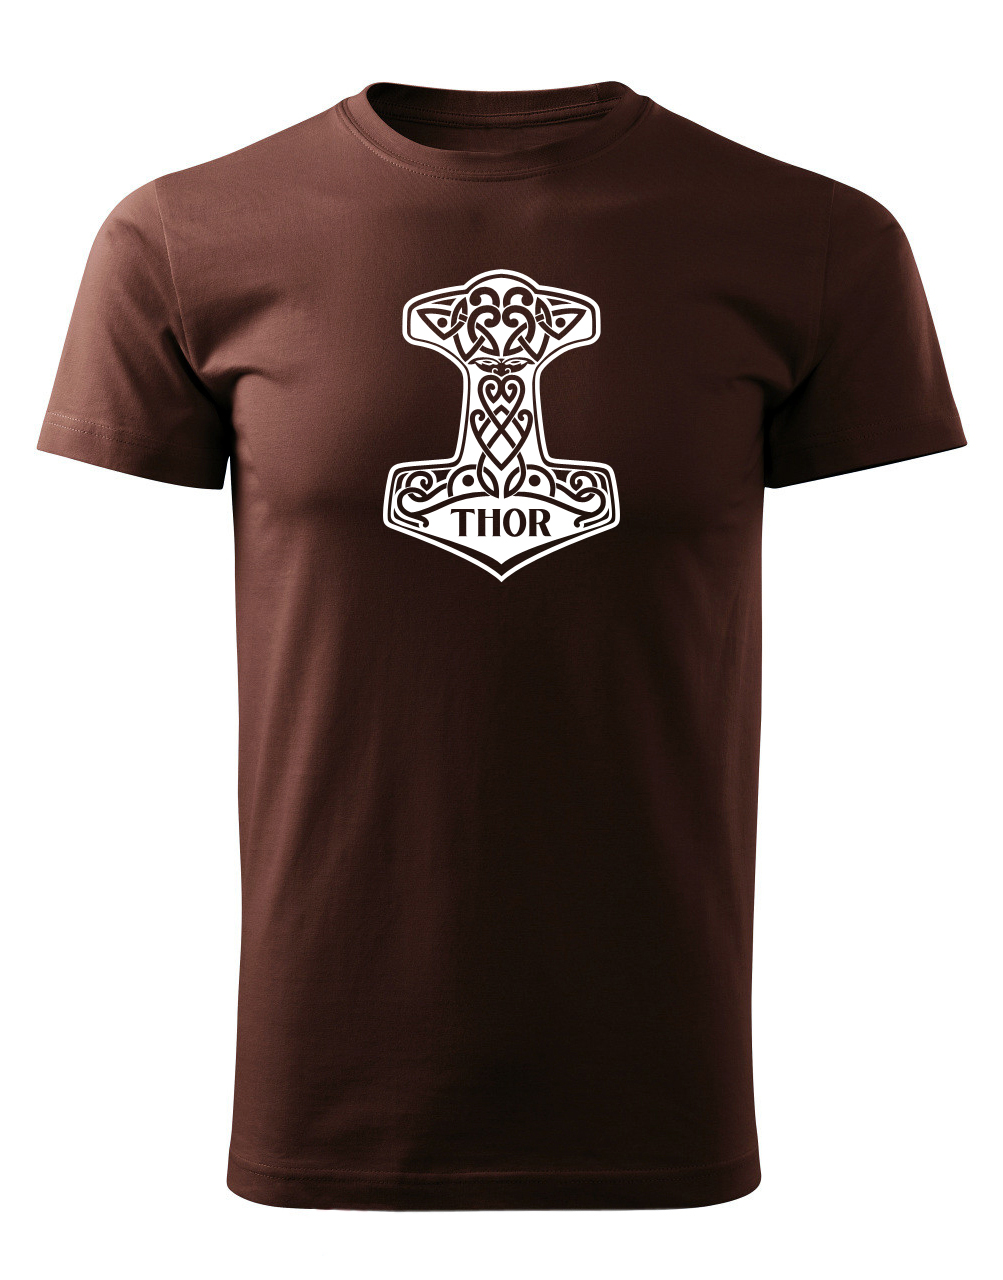 Pánské tričko s potiskem Thorovo kladivo čokoládová